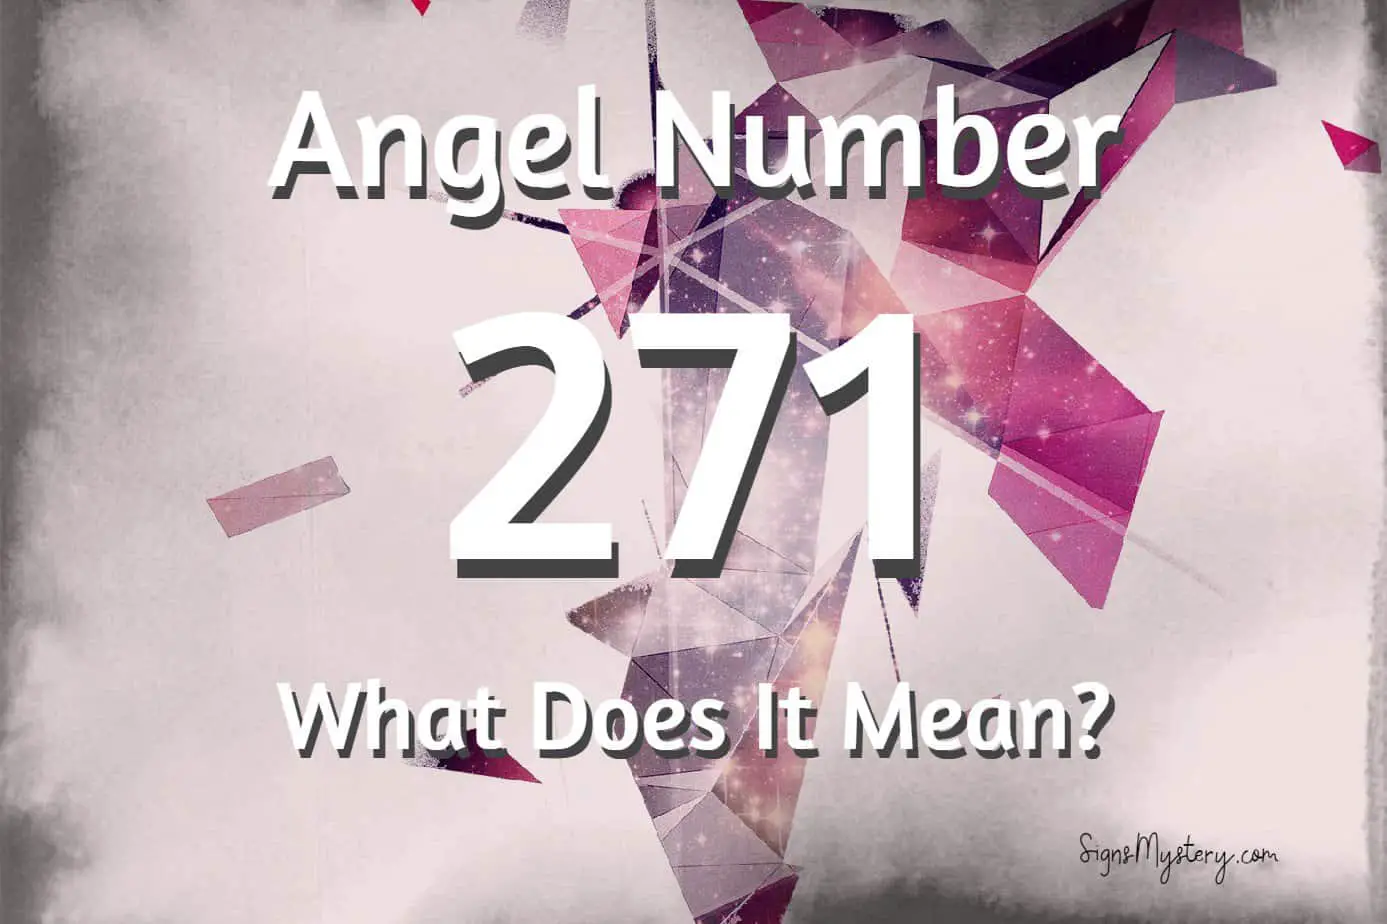 271 angel number